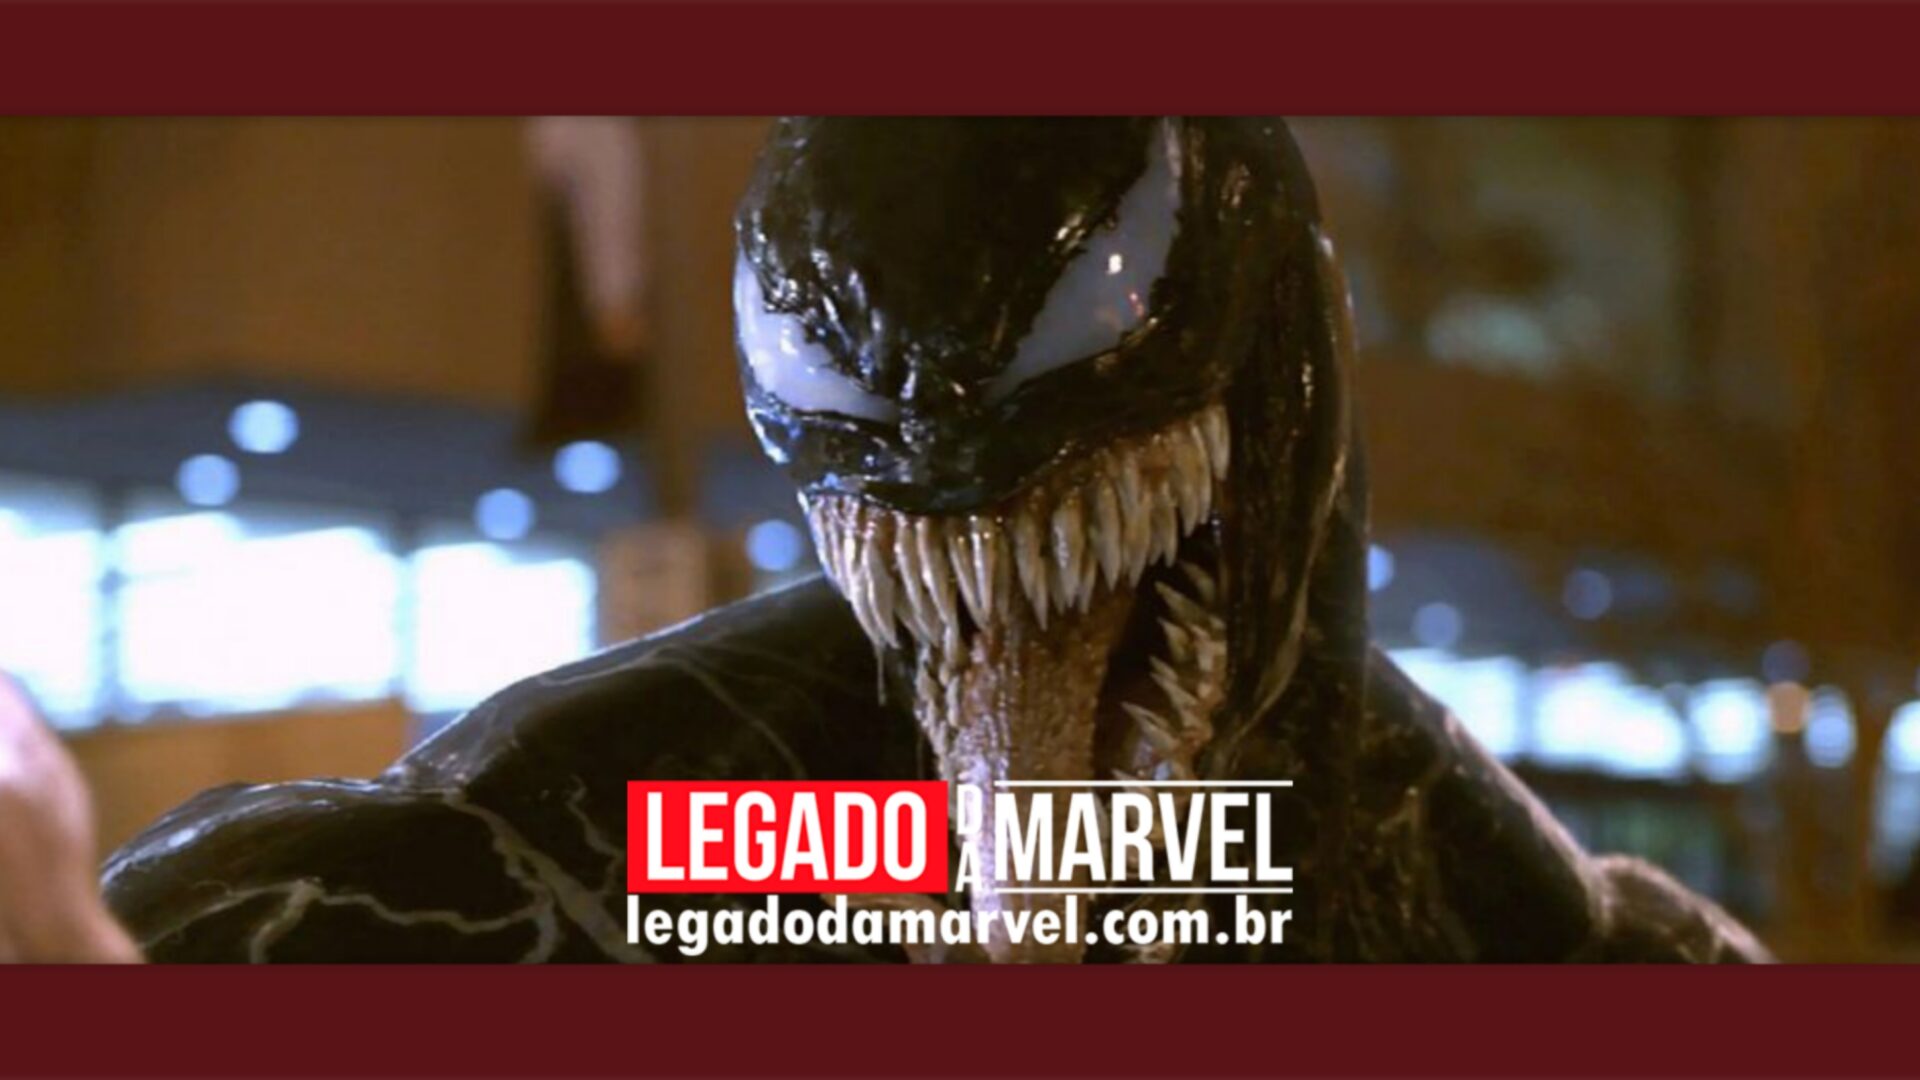 Oficial: Sony confirma o desenvolvimento de Venom 3